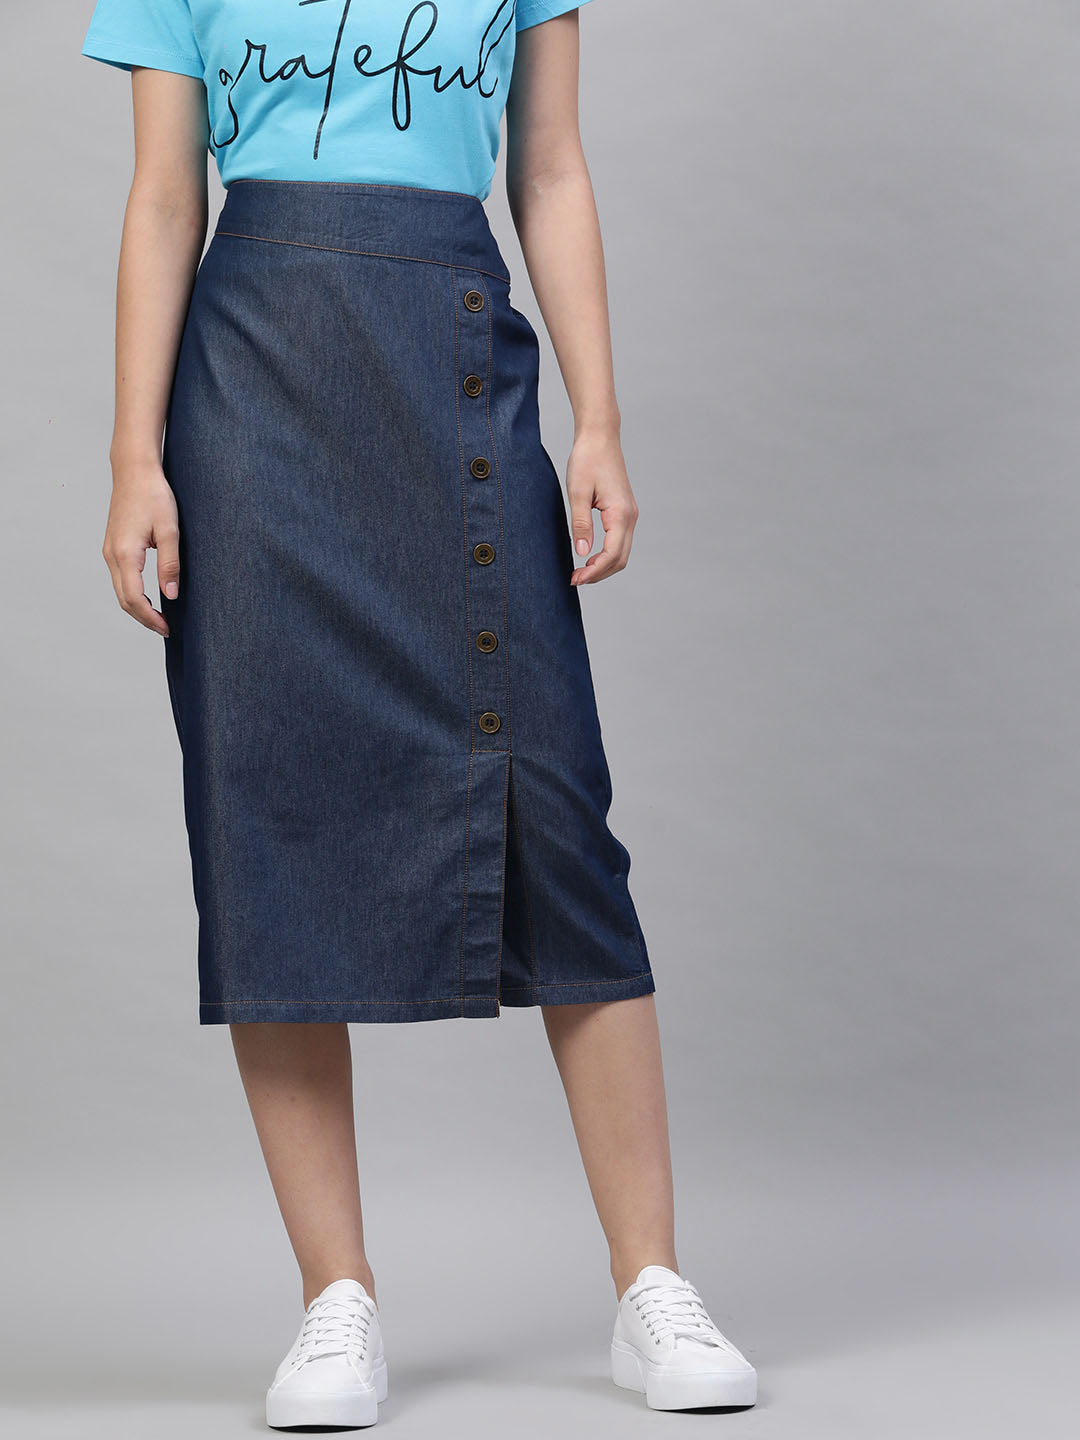 Buy StyleStone Blue Denim Midi Skirt for Womens Online  Tata CLiQ